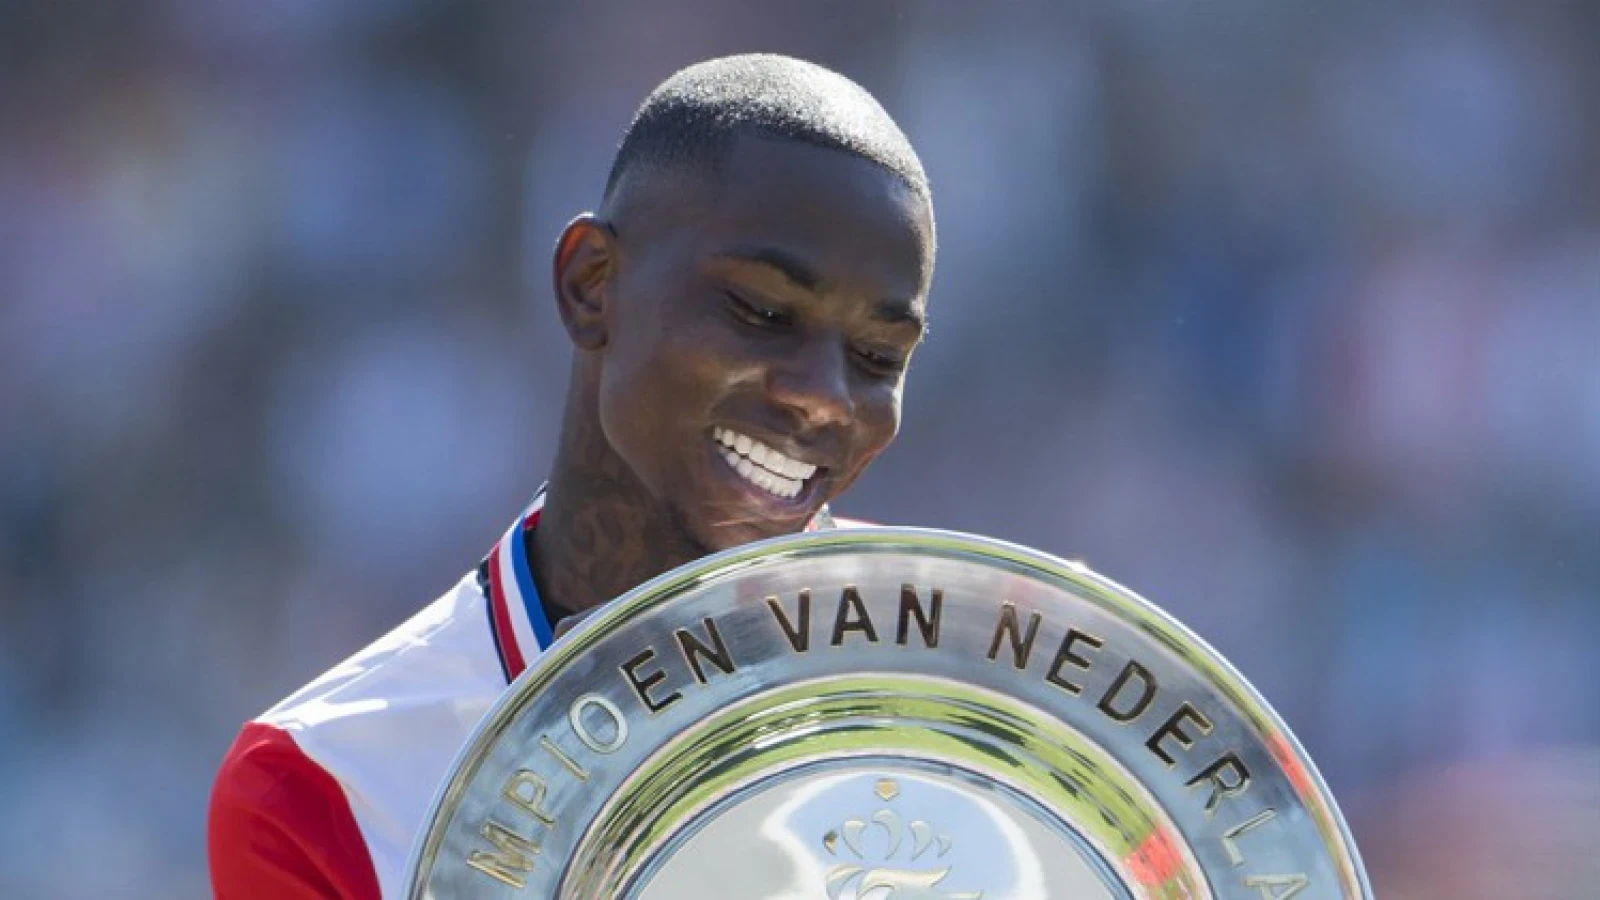 Buitenspeler wilde graag terugkeren: 'Maar Feyenoord had geen enkele interesse'